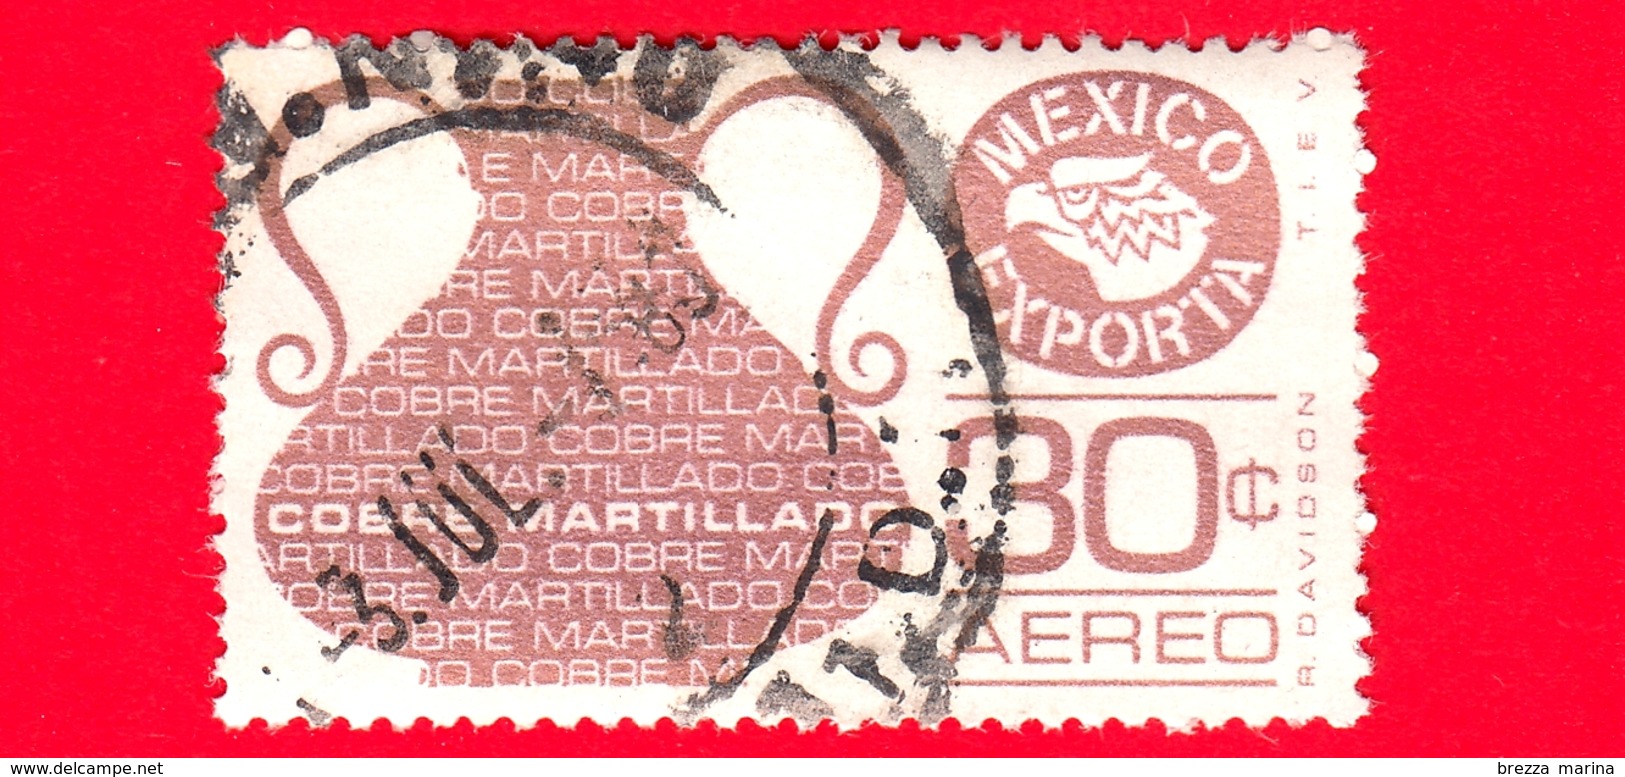 MESSICO - Usato - 1976 - Mexico Exporta - Rame - Cobre Martillado - Copper - 30 C - Posta Aerea - Mexiko